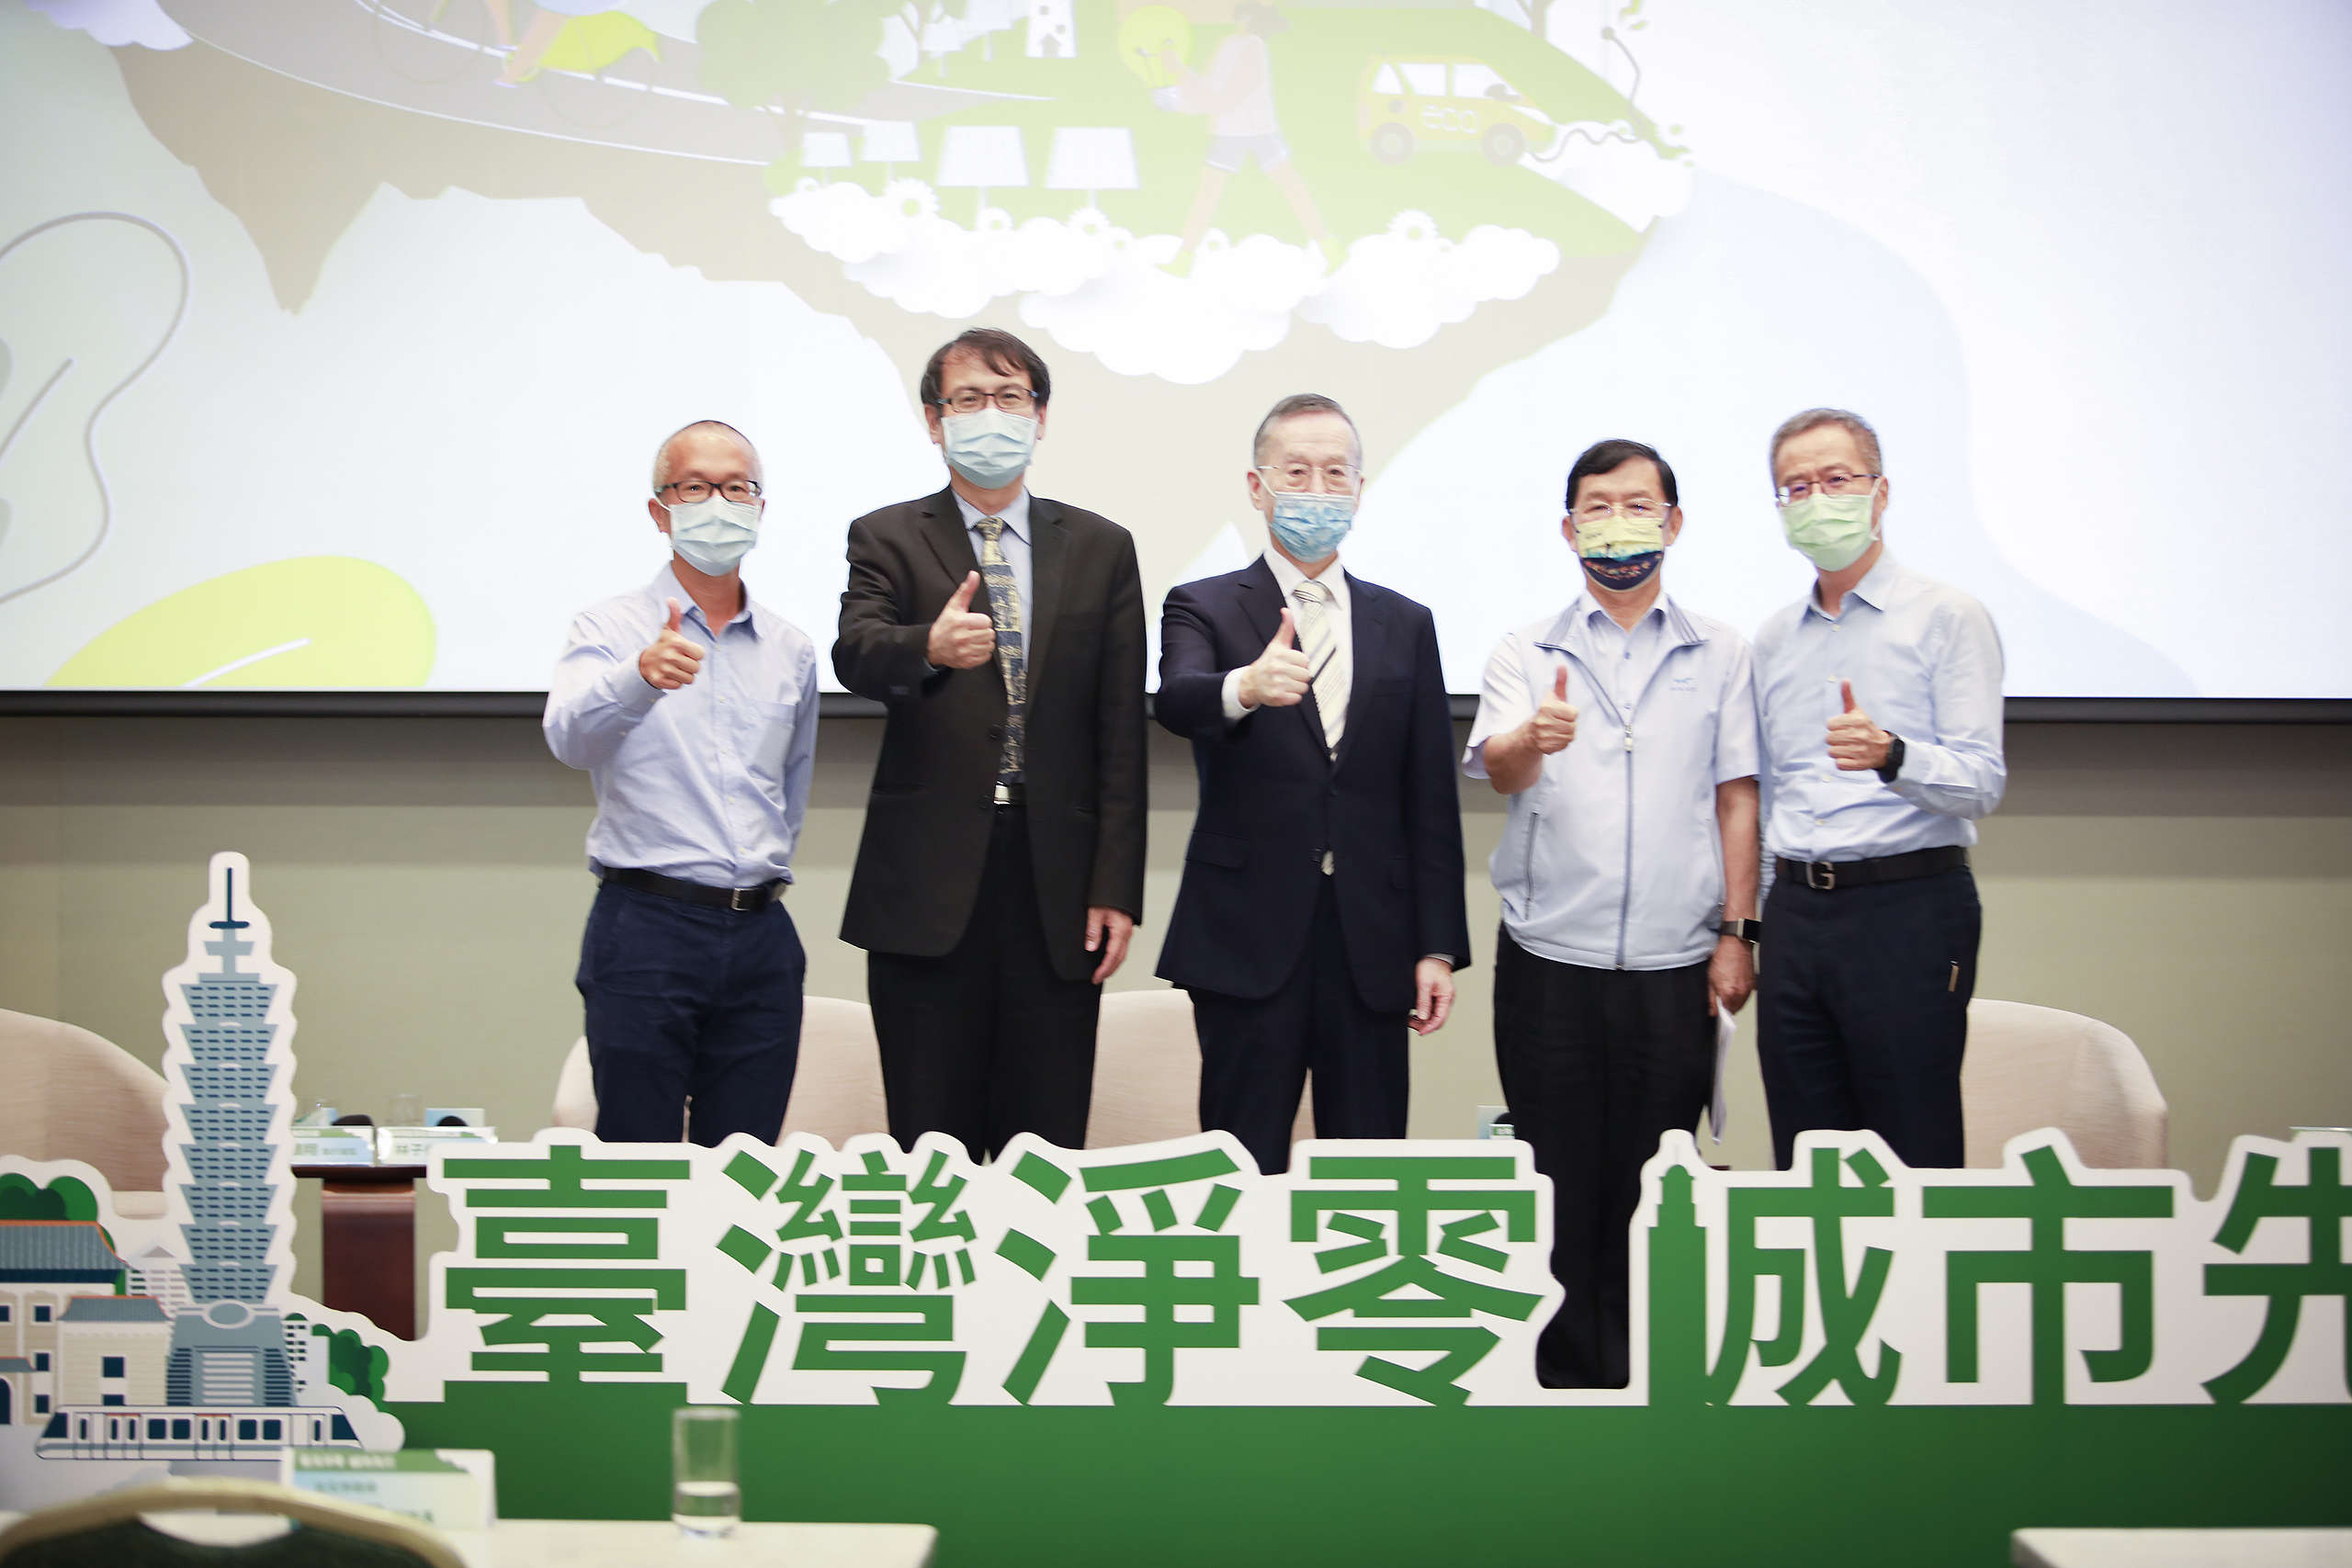 2021年10月，綠色和平舉行「臺灣淨零 城市先行論壇」，邀請各地方官員出席並呼籲當局推動減碳。